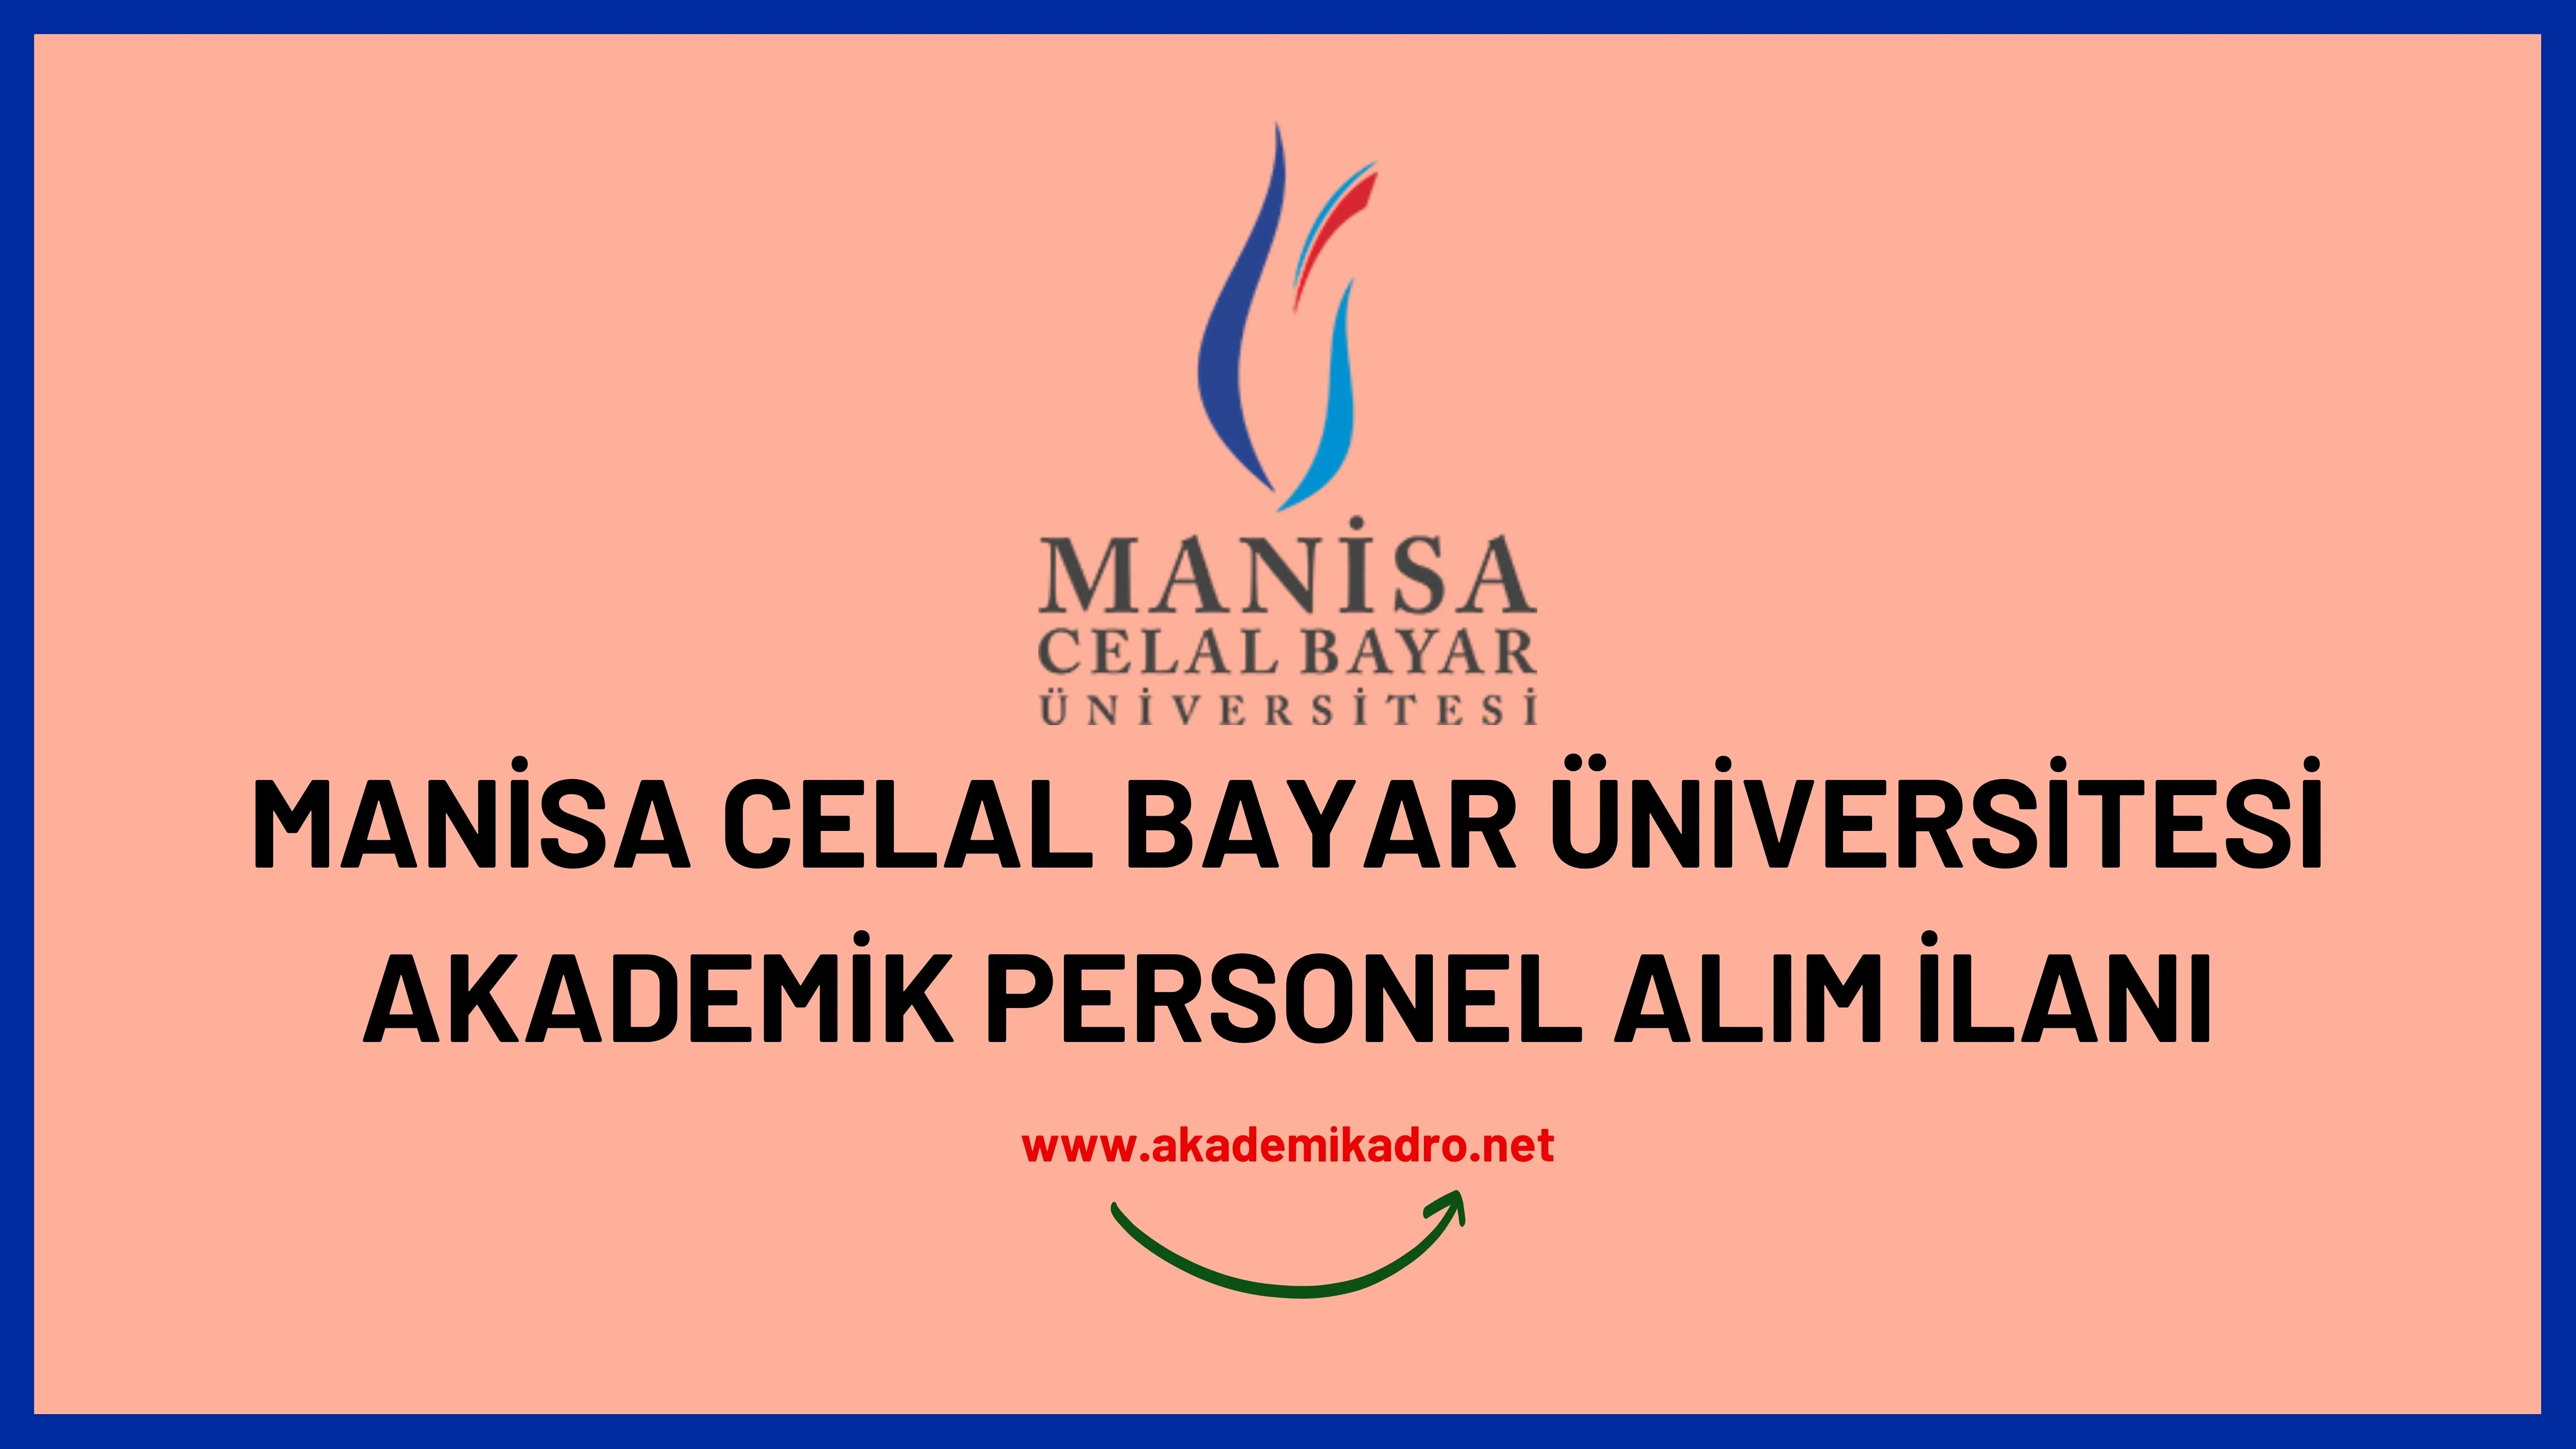 Manisa Celal Bayar Üniversitesi çeşitli branşlarda 28 akademik personel alacak.